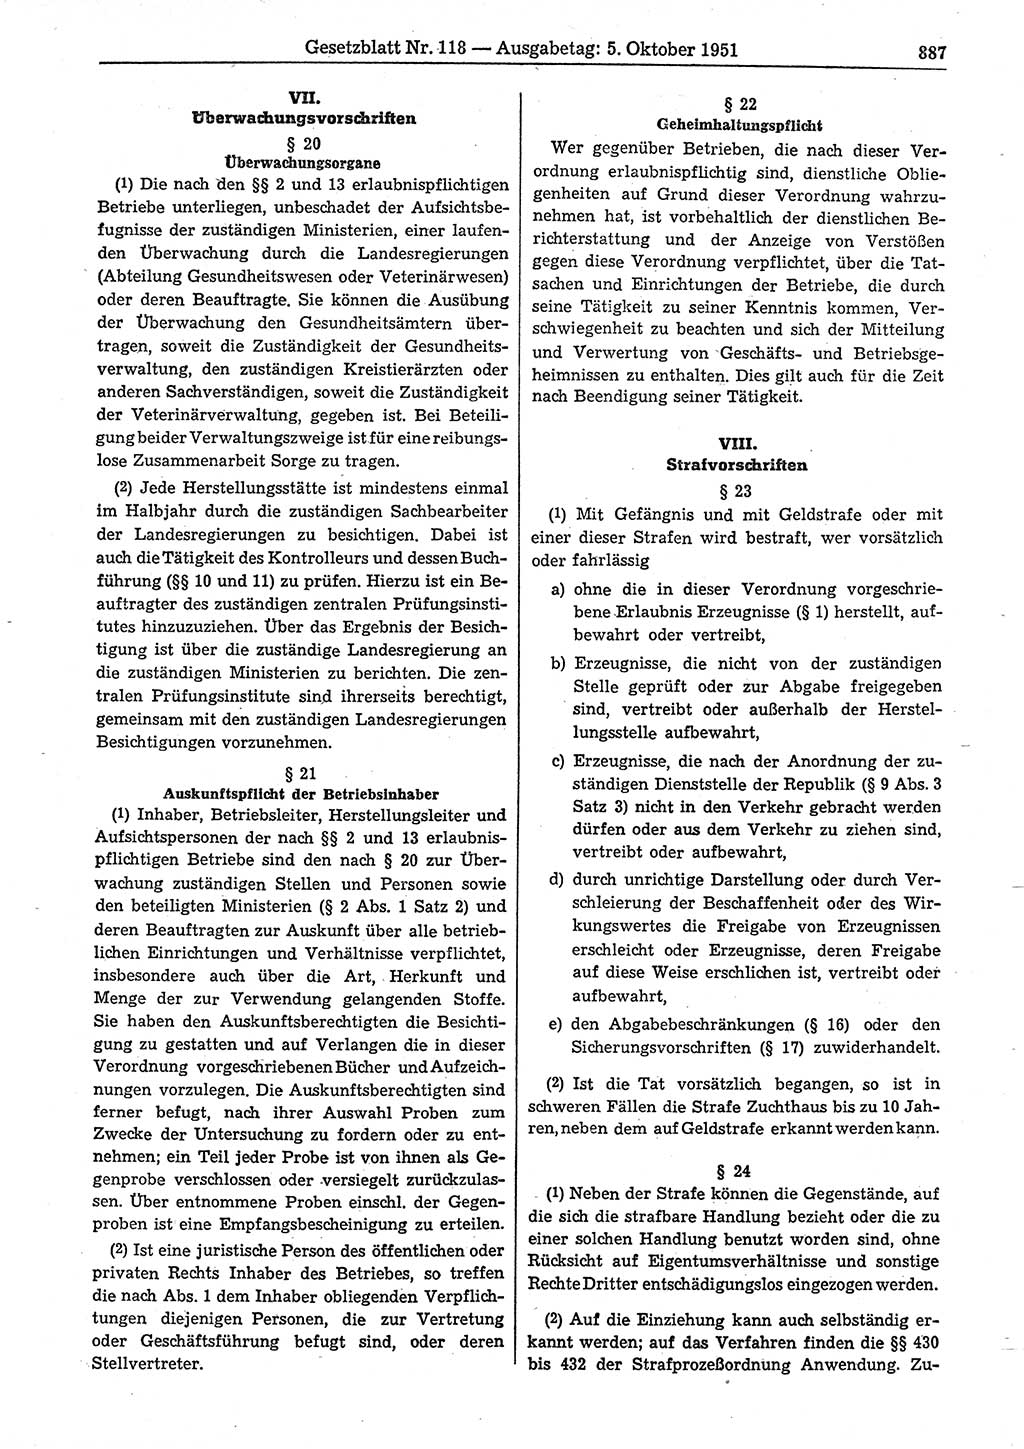 Gesetzblatt (GBl.) der Deutschen Demokratischen Republik (DDR) 1951, Seite 887 (GBl. DDR 1951, S. 887)